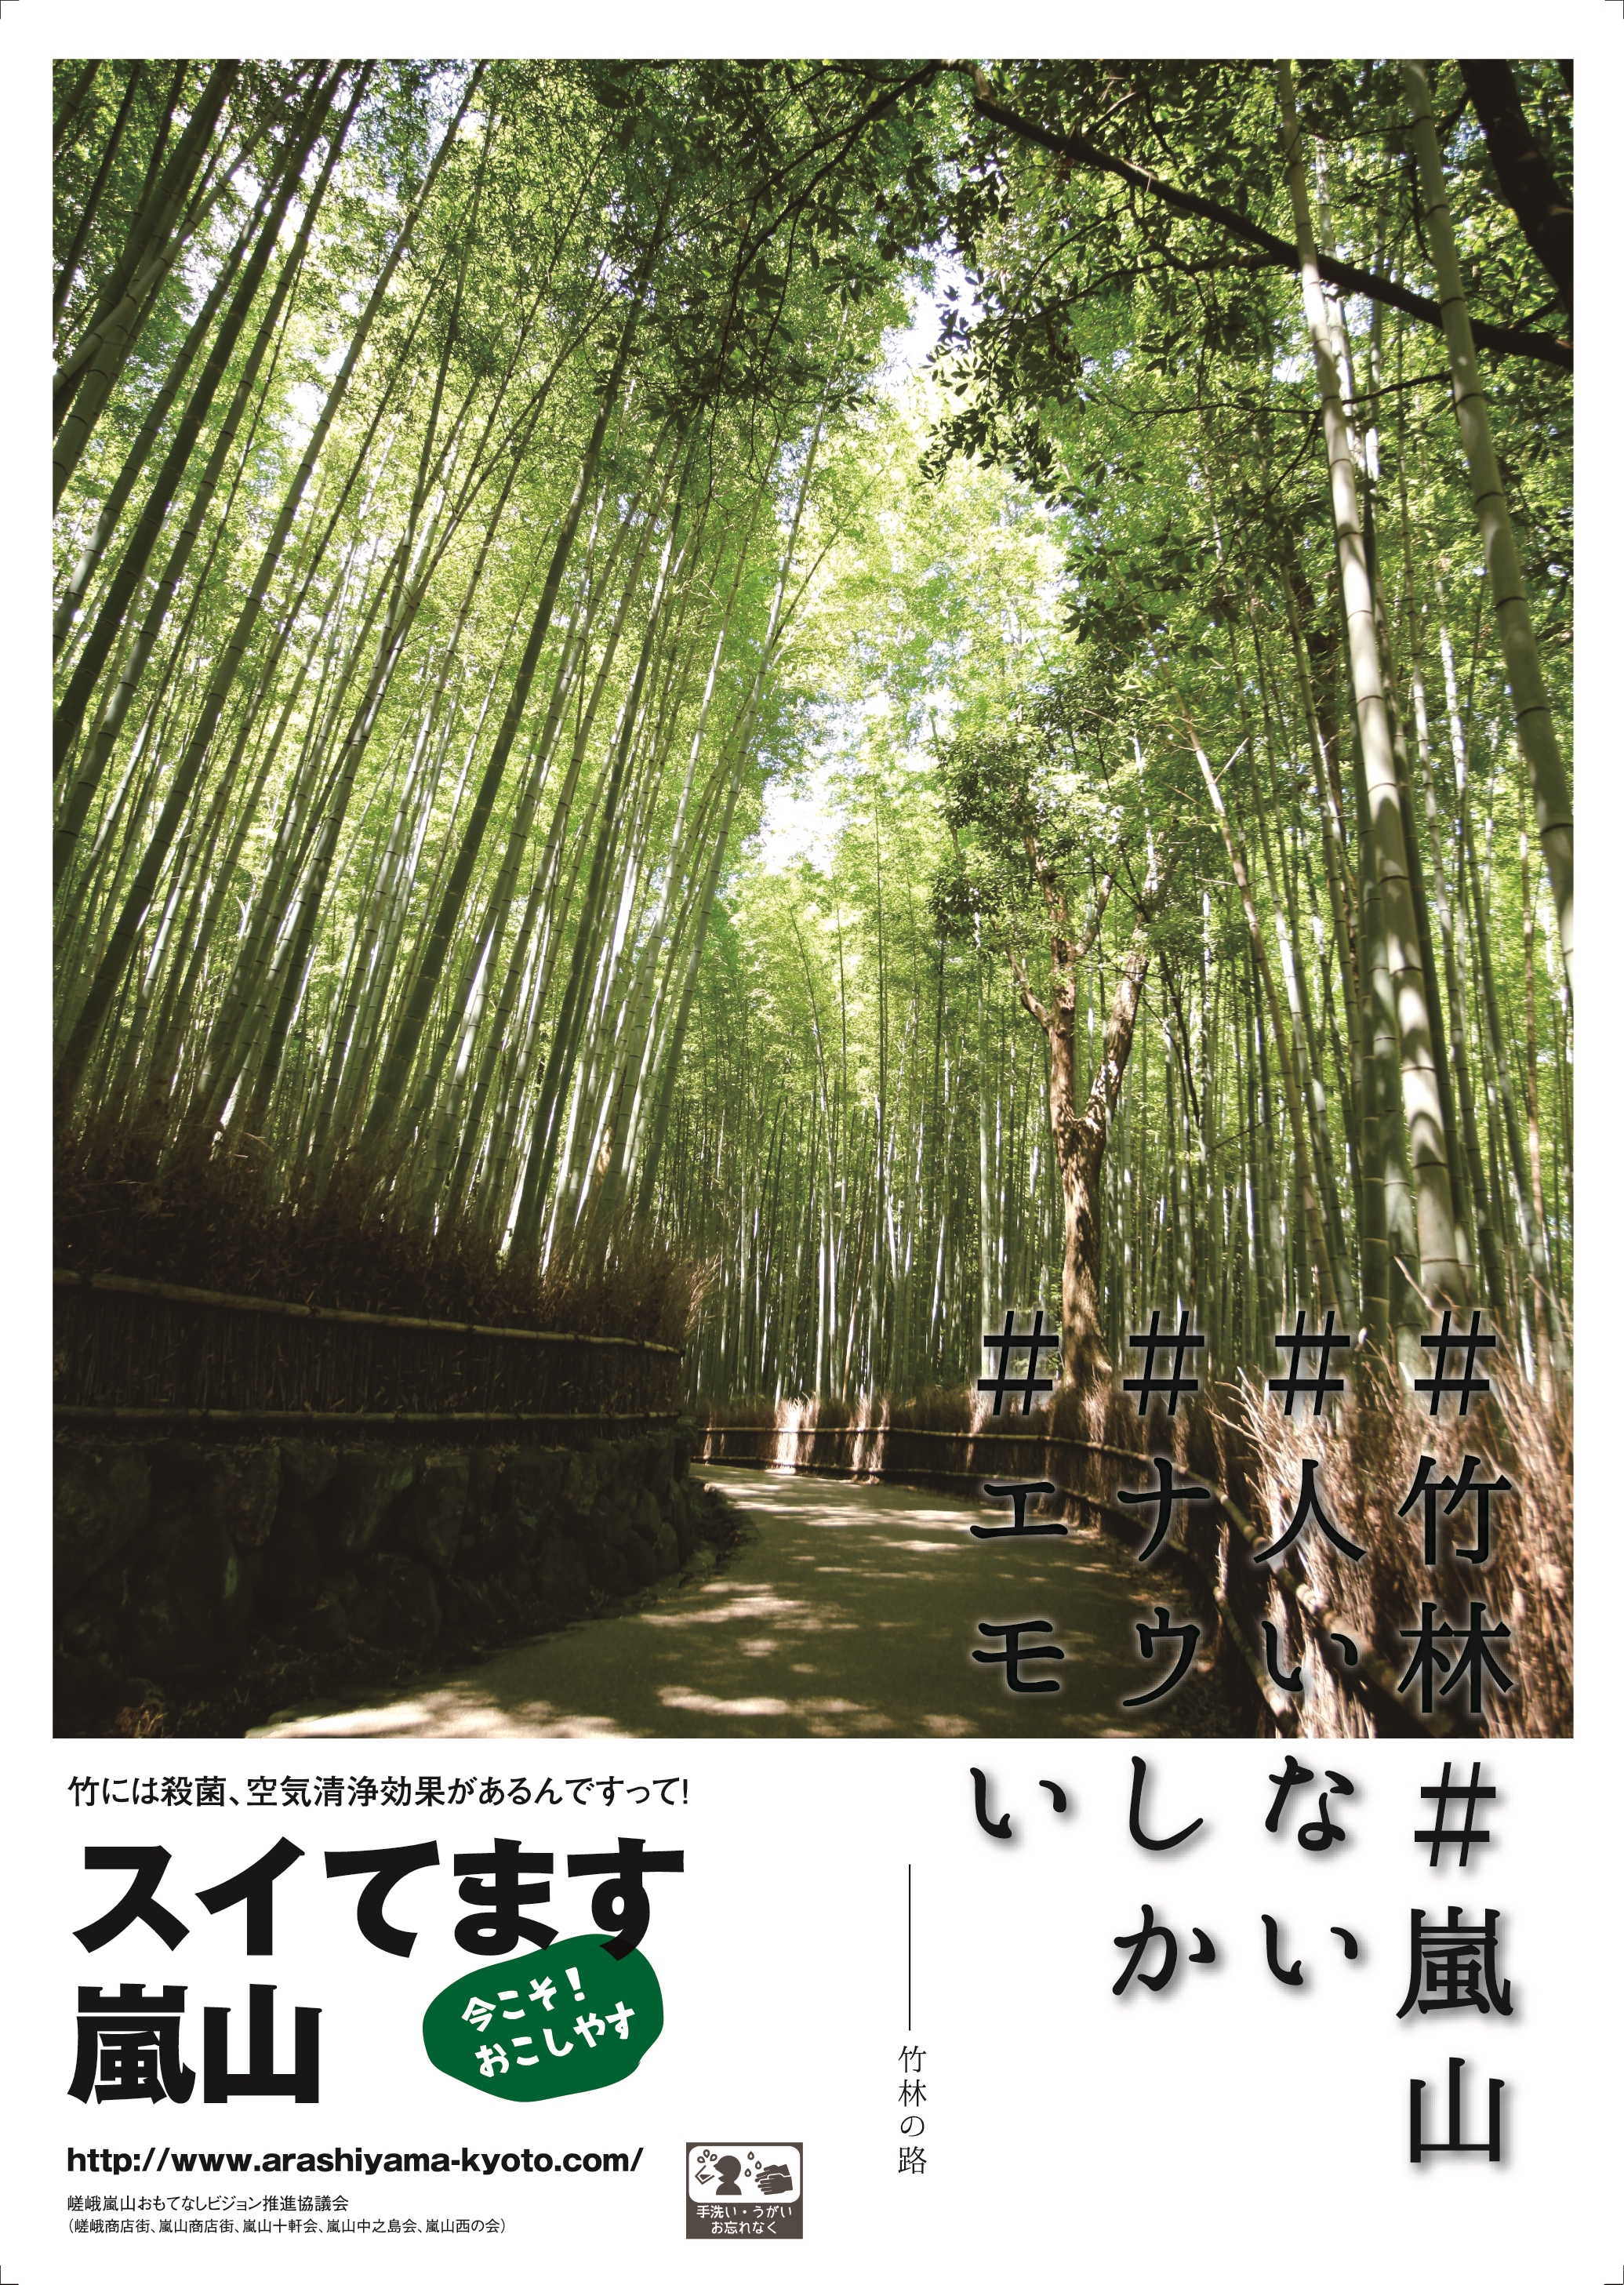 http://www.arashiyama-kyoto.com/info/2522632_5742087_%E7%AB%B9%E6%9E%97.jpg